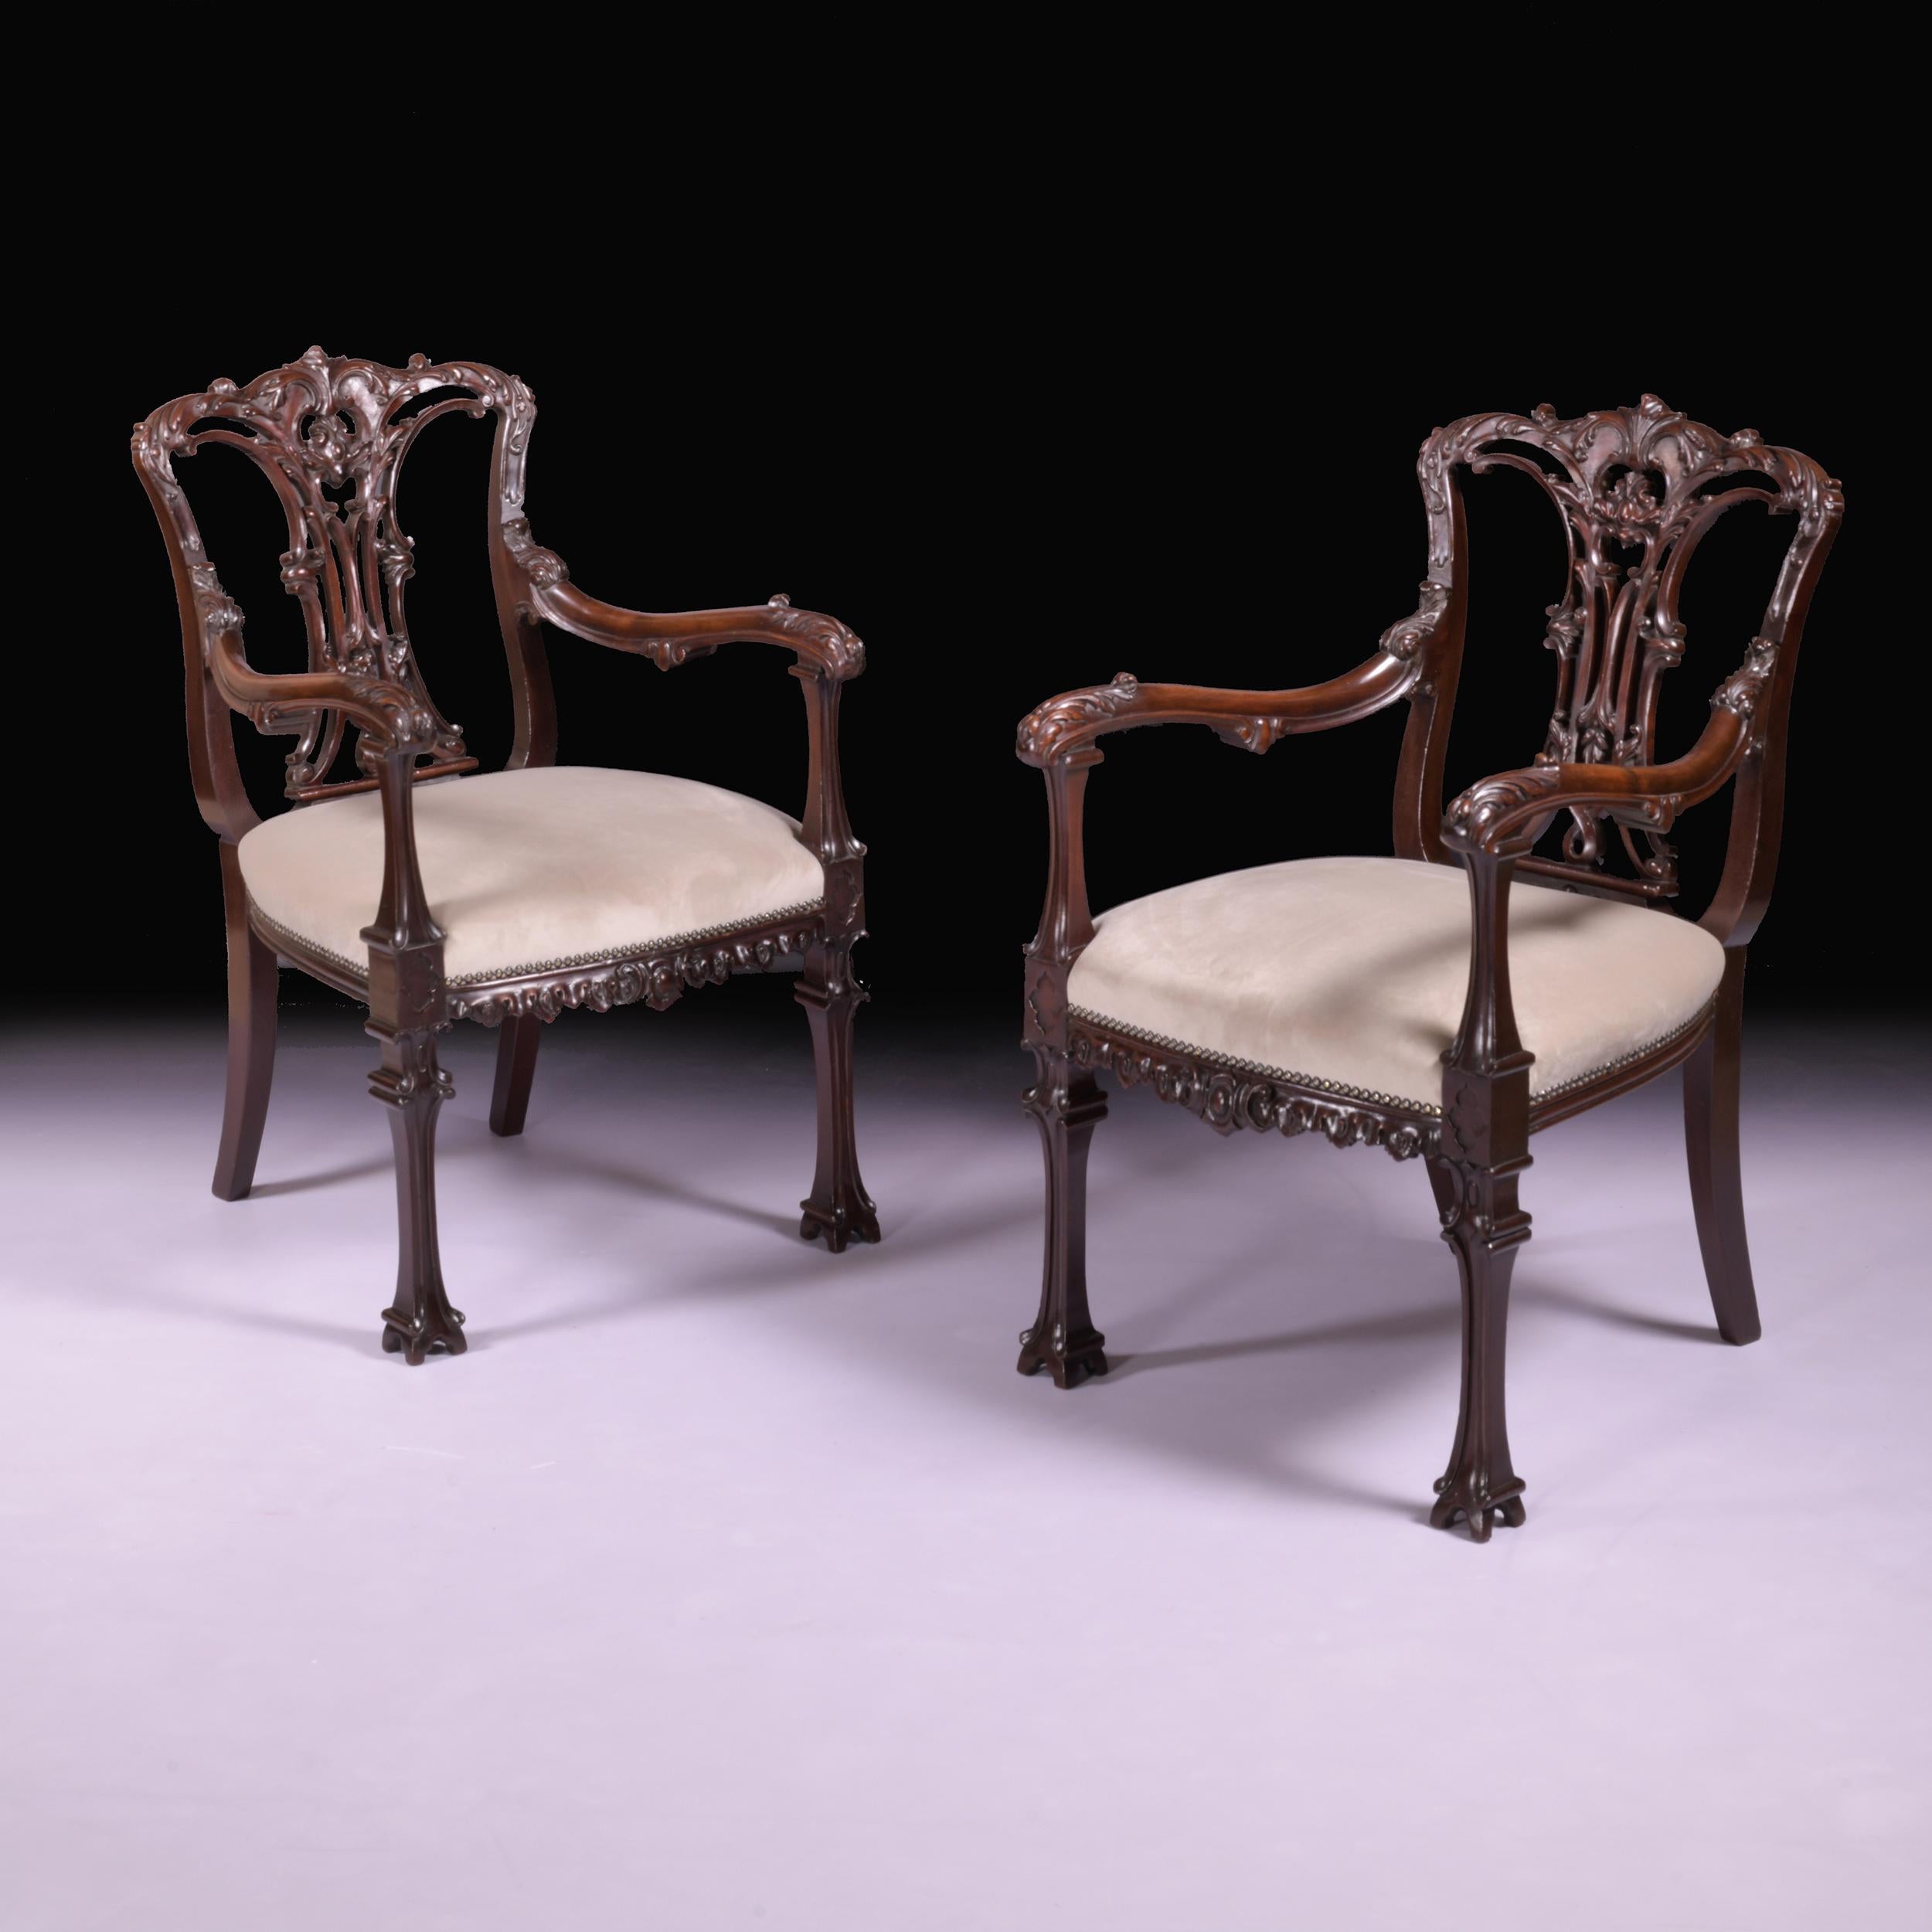 Ein schönes Paar Sessel aus dem 19. Jahrhundert im chinesischen Chippendale-Stil, mit gewölbtem Kamm über einer kunstvoll geschnitzten und verflochtenen Bandleiste, gepolstertem Sitz und geschwungenen Armlehnen, die Vorderbeine enden in